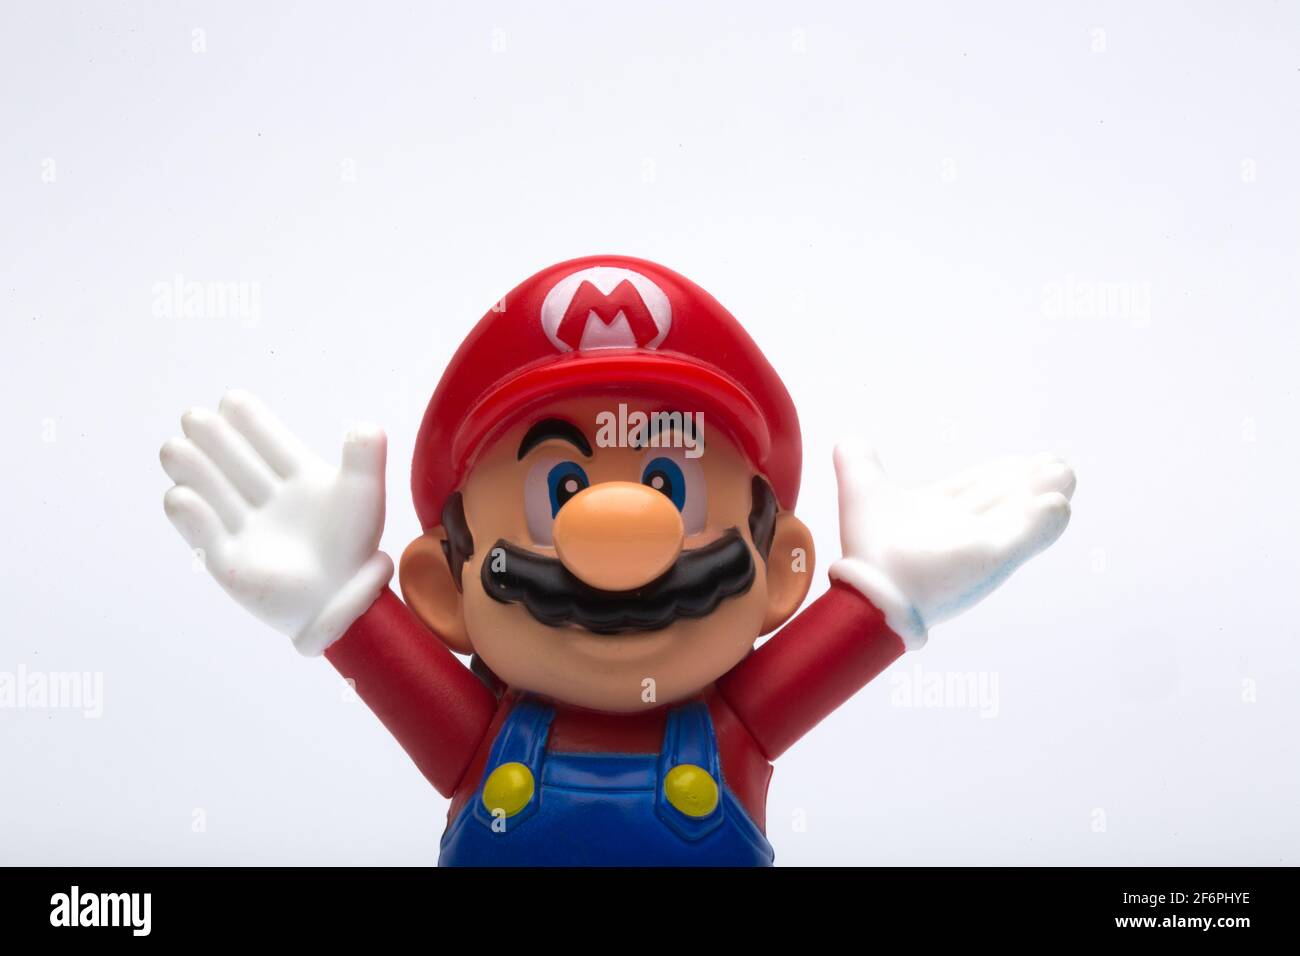 Moskau, Russland - 06. April 2021: Plastikfigur von Mario aus Nintendo-Videospiel isoliert auf weißem Hintergrund. Stockfoto